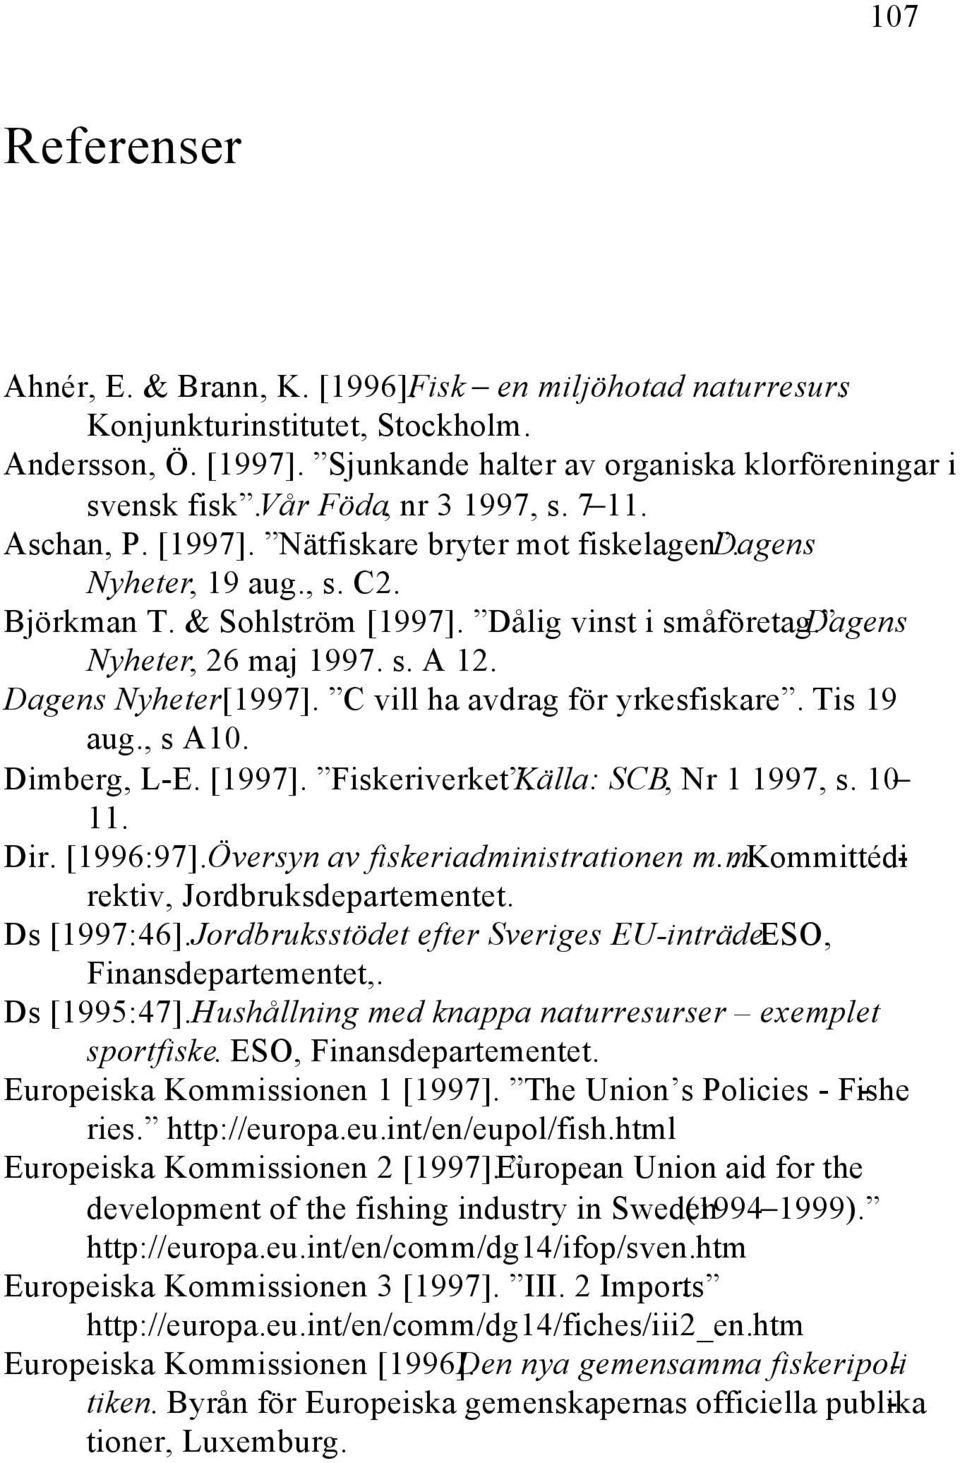 Dagens Nyheter, 26 maj 1997. s. A 12. Dagens Nyheter[1997]. C vill ha avdrag för yrkesfiskare. Tis 19 aug., s A10. Dimberg, L-E. [1997]. Fiskeriverket. Källa: SCB, Nr 1 1997, s. 10 11. Dir. [1996:97].